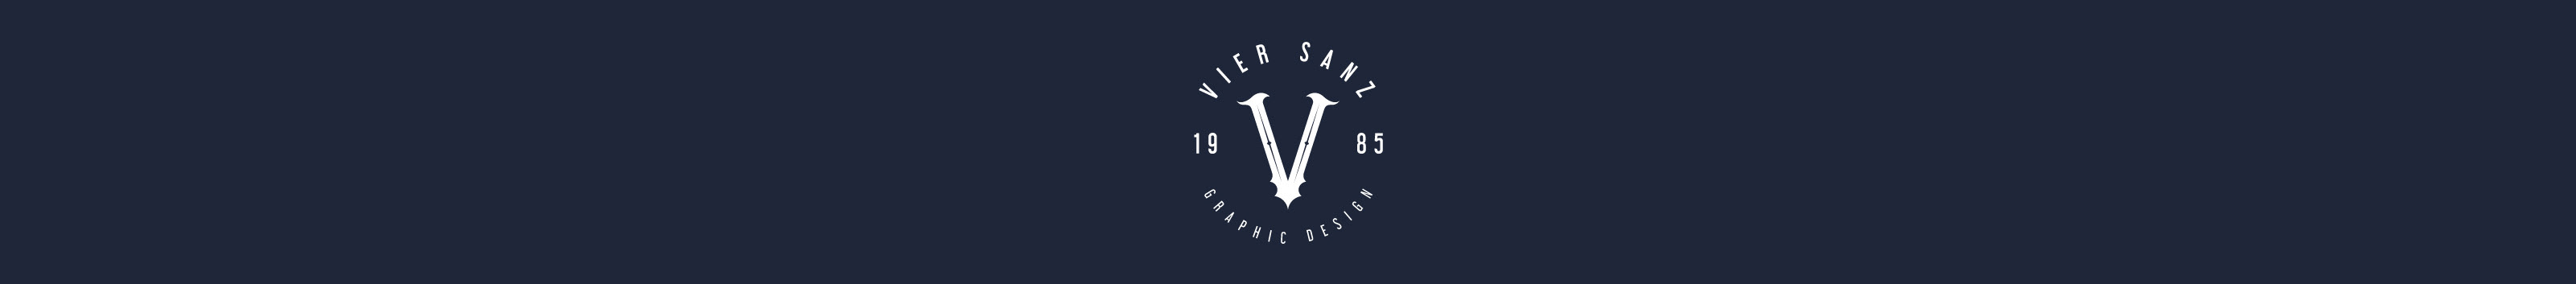 Vier Sanz's profile banner